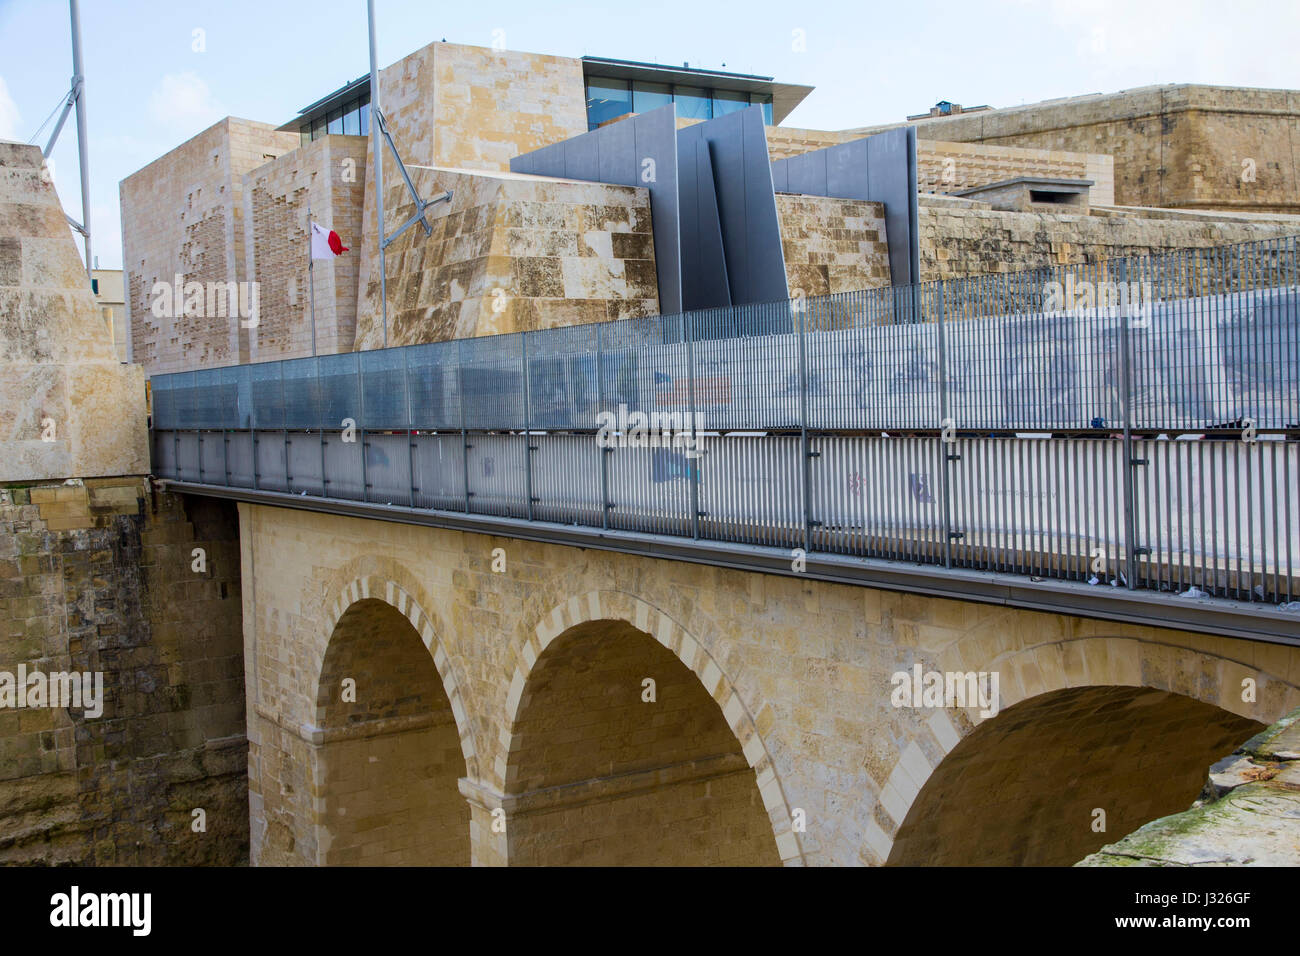 Eine Neugestaltung des historischen Stadttors Vallettas, Haupt-Eingang in die befestigte Hauptstadt von Malta, von italienischen Architekten Renzo Piano wurde im 201 abgeschlossen. Stockfoto